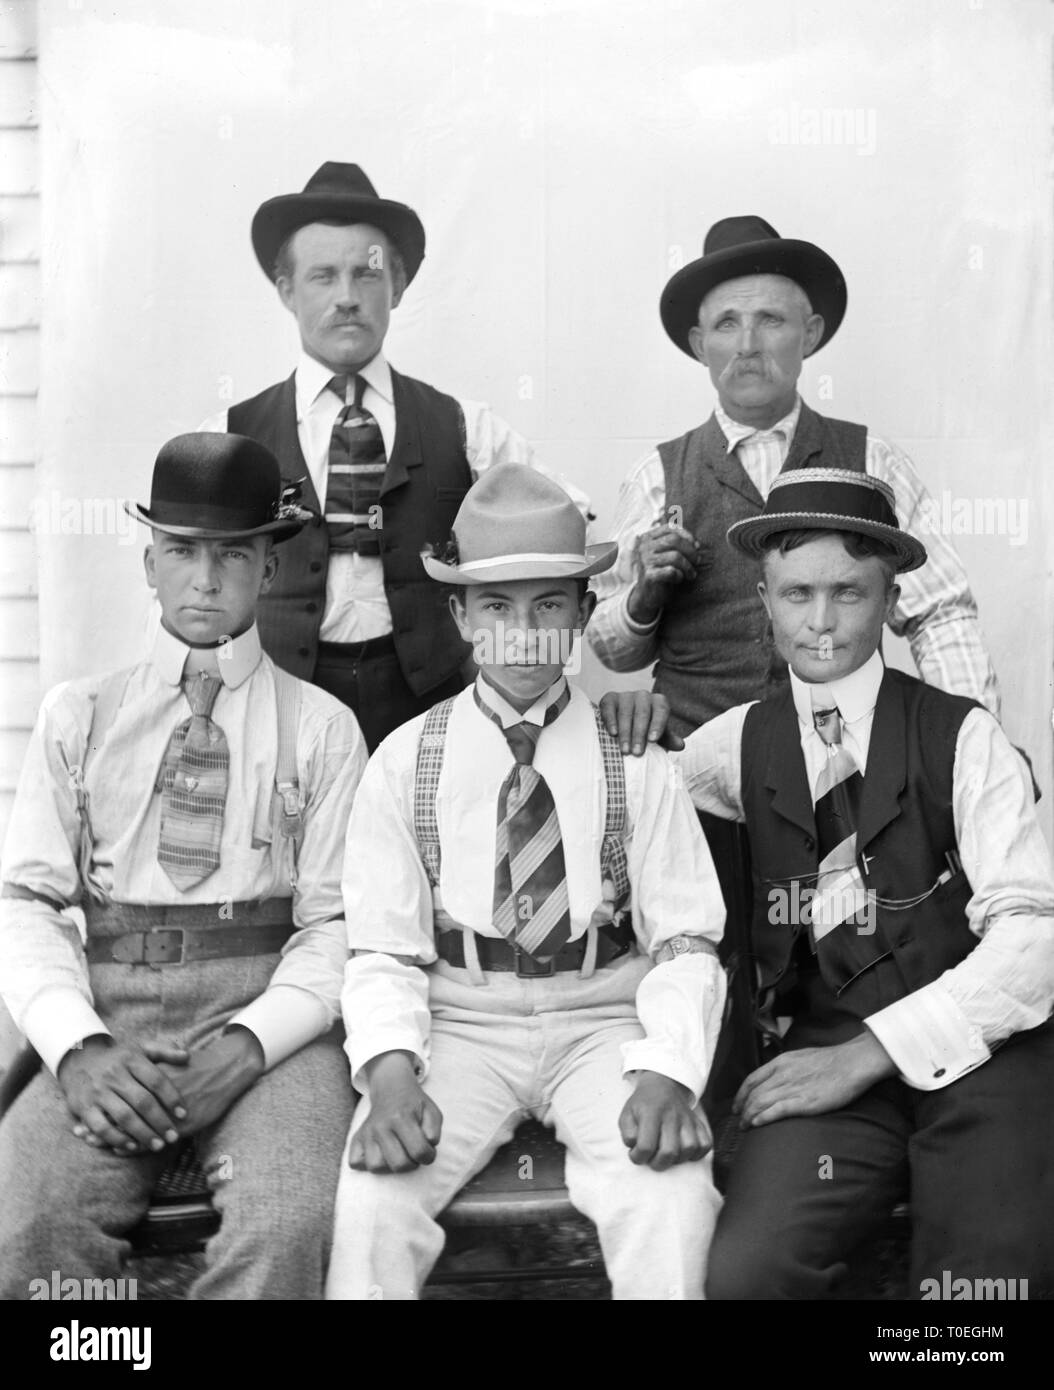 Cinque uomini di varie età hanno una pista difficile guardare a loro per un ritratto, ca. 1900. Foto Stock